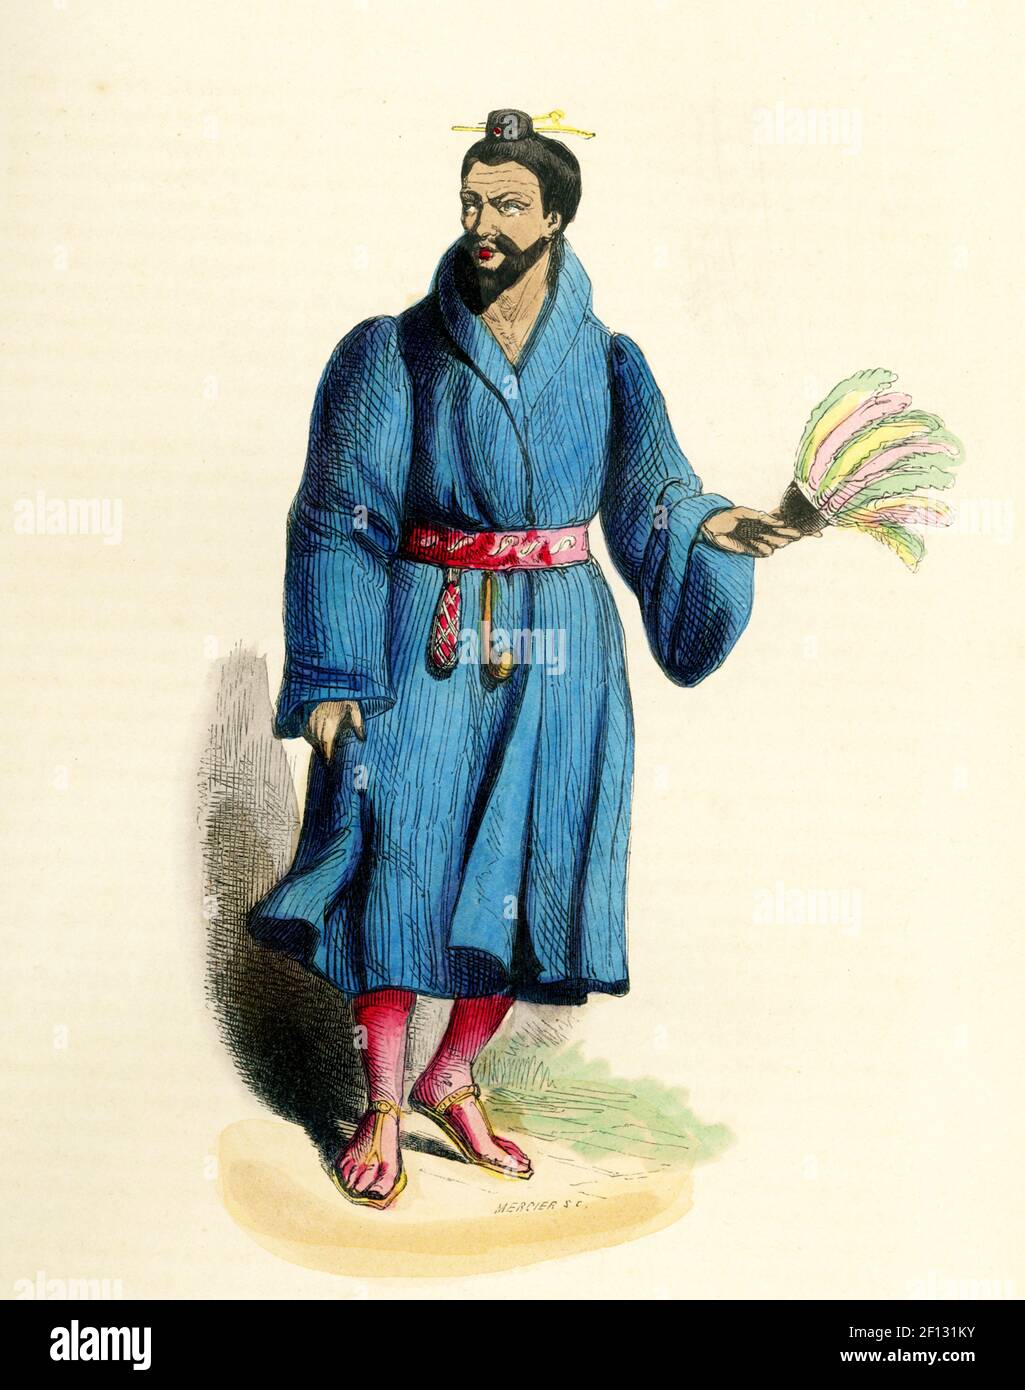 Cette illustration des années 1840 montre un habitant de l'île Lou-Tohou en Asie. Banque D'Images